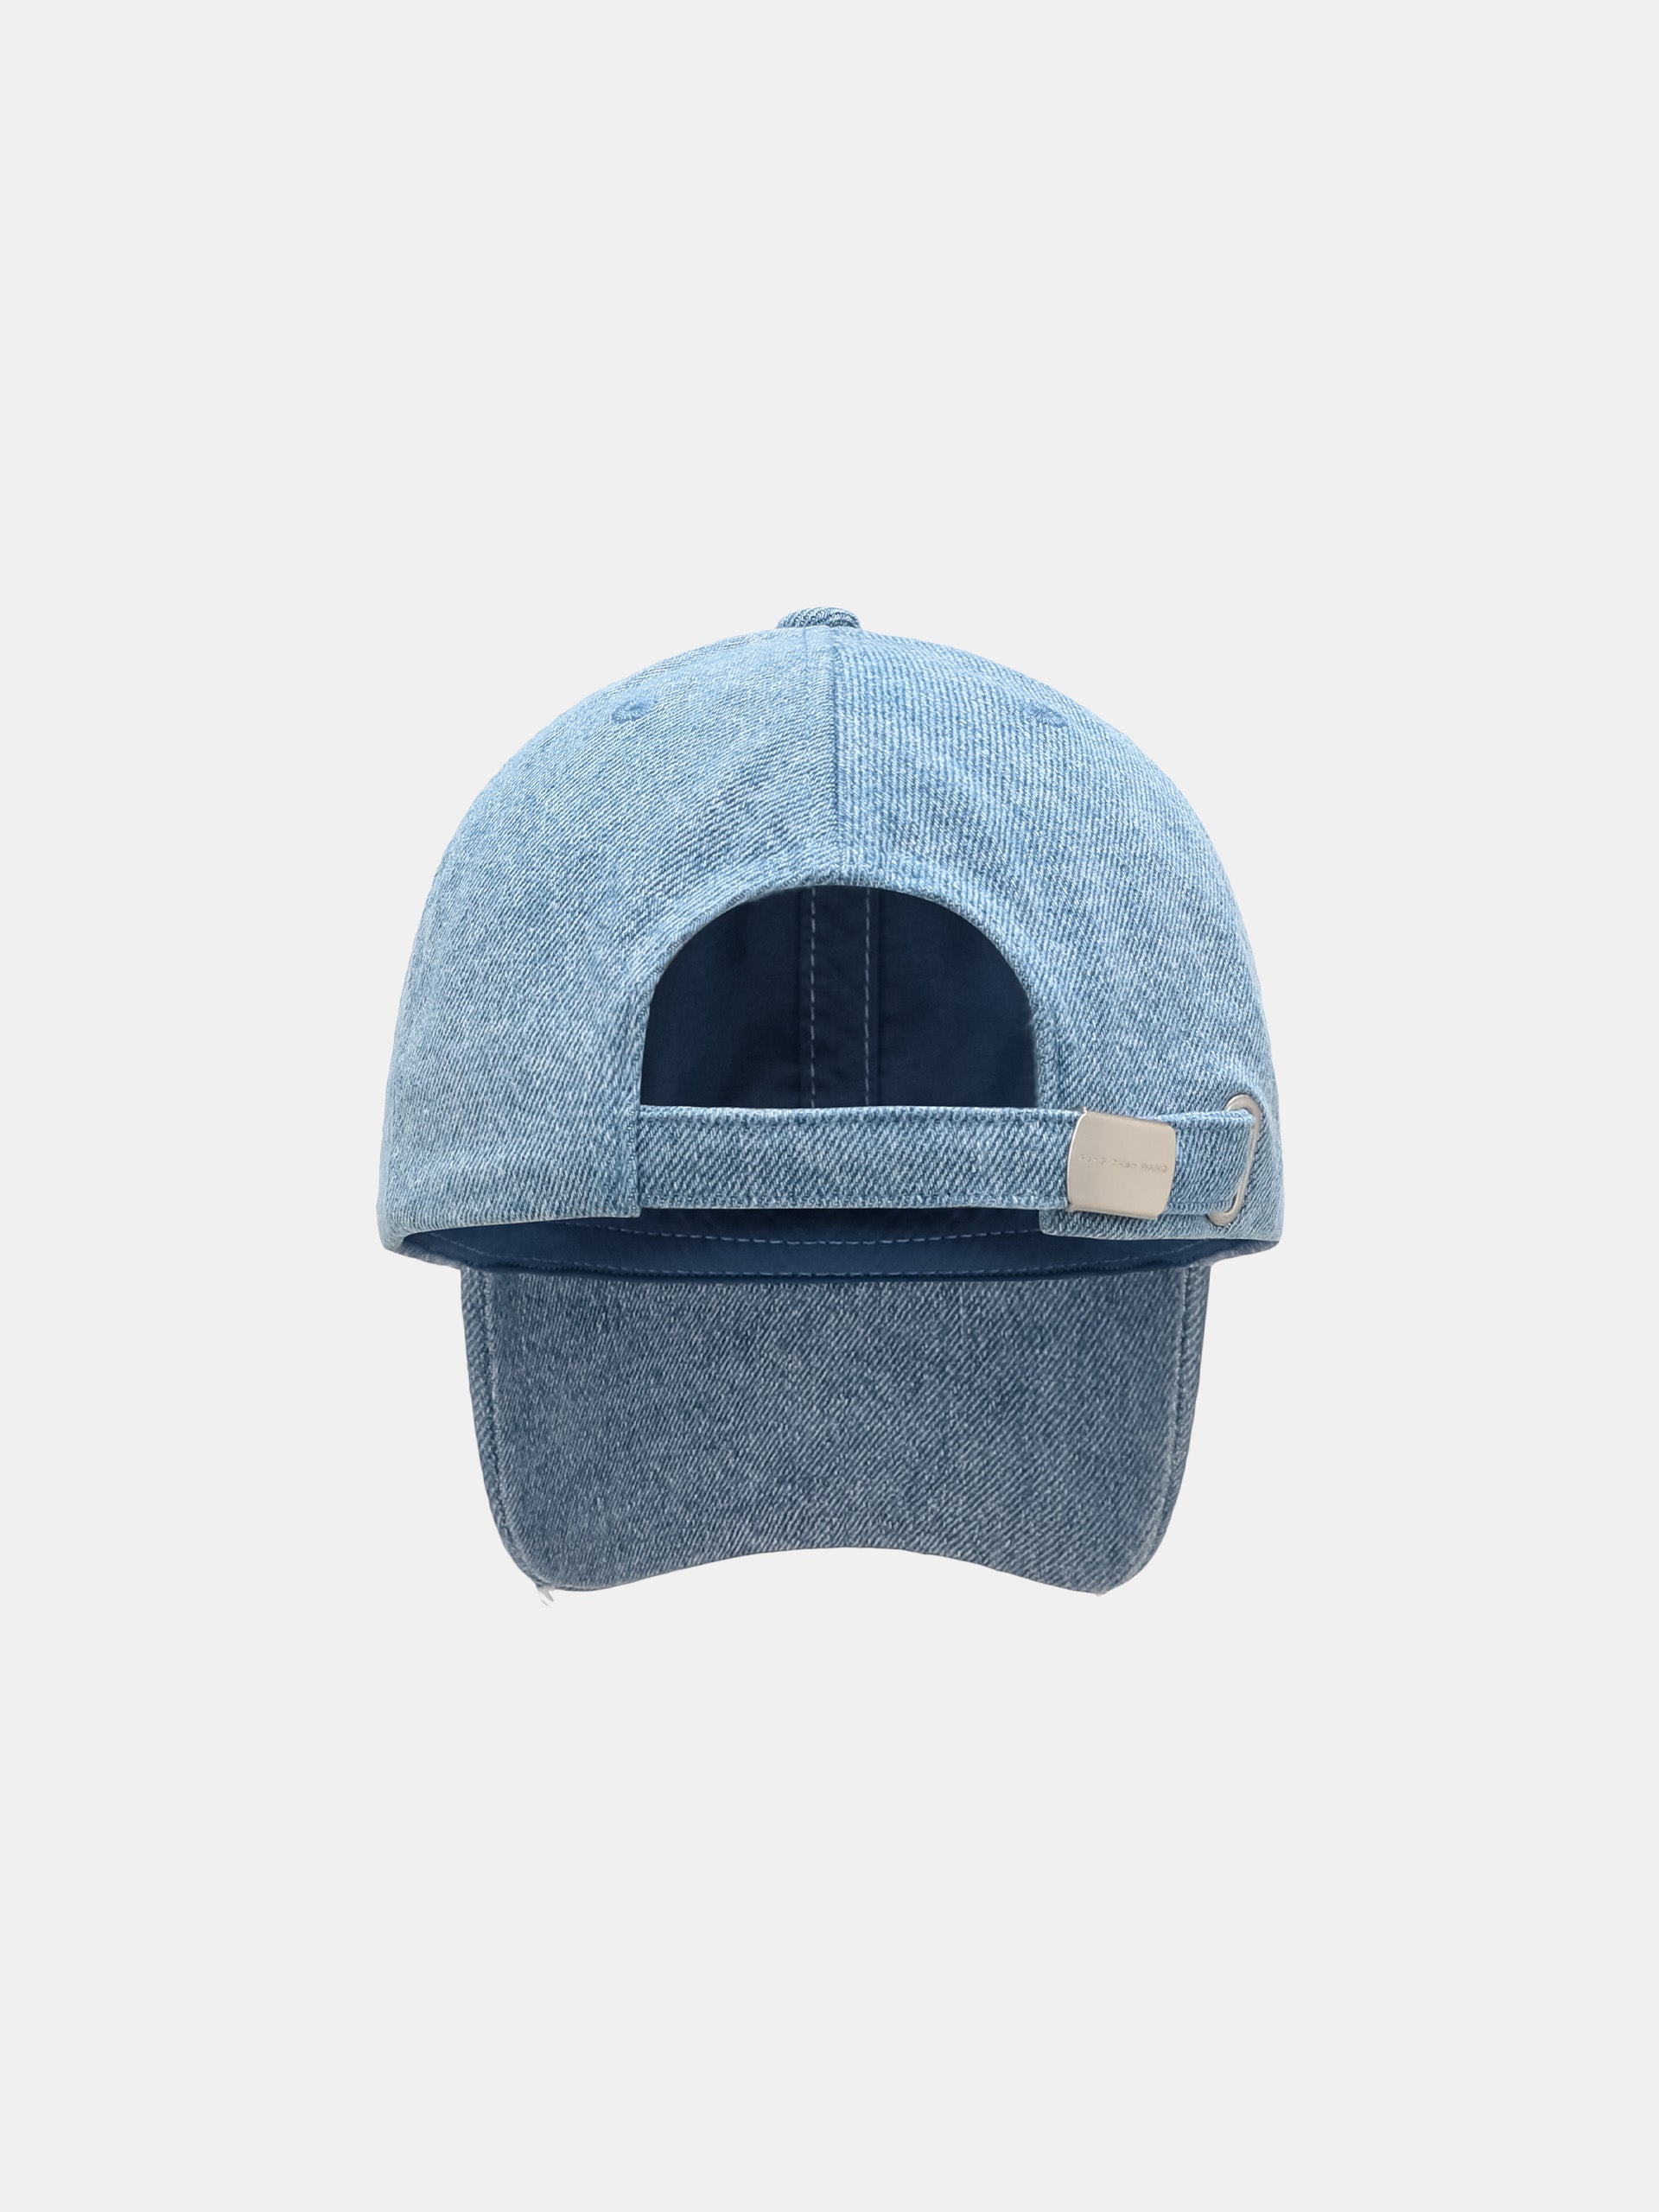 BLUE DENIM CAP